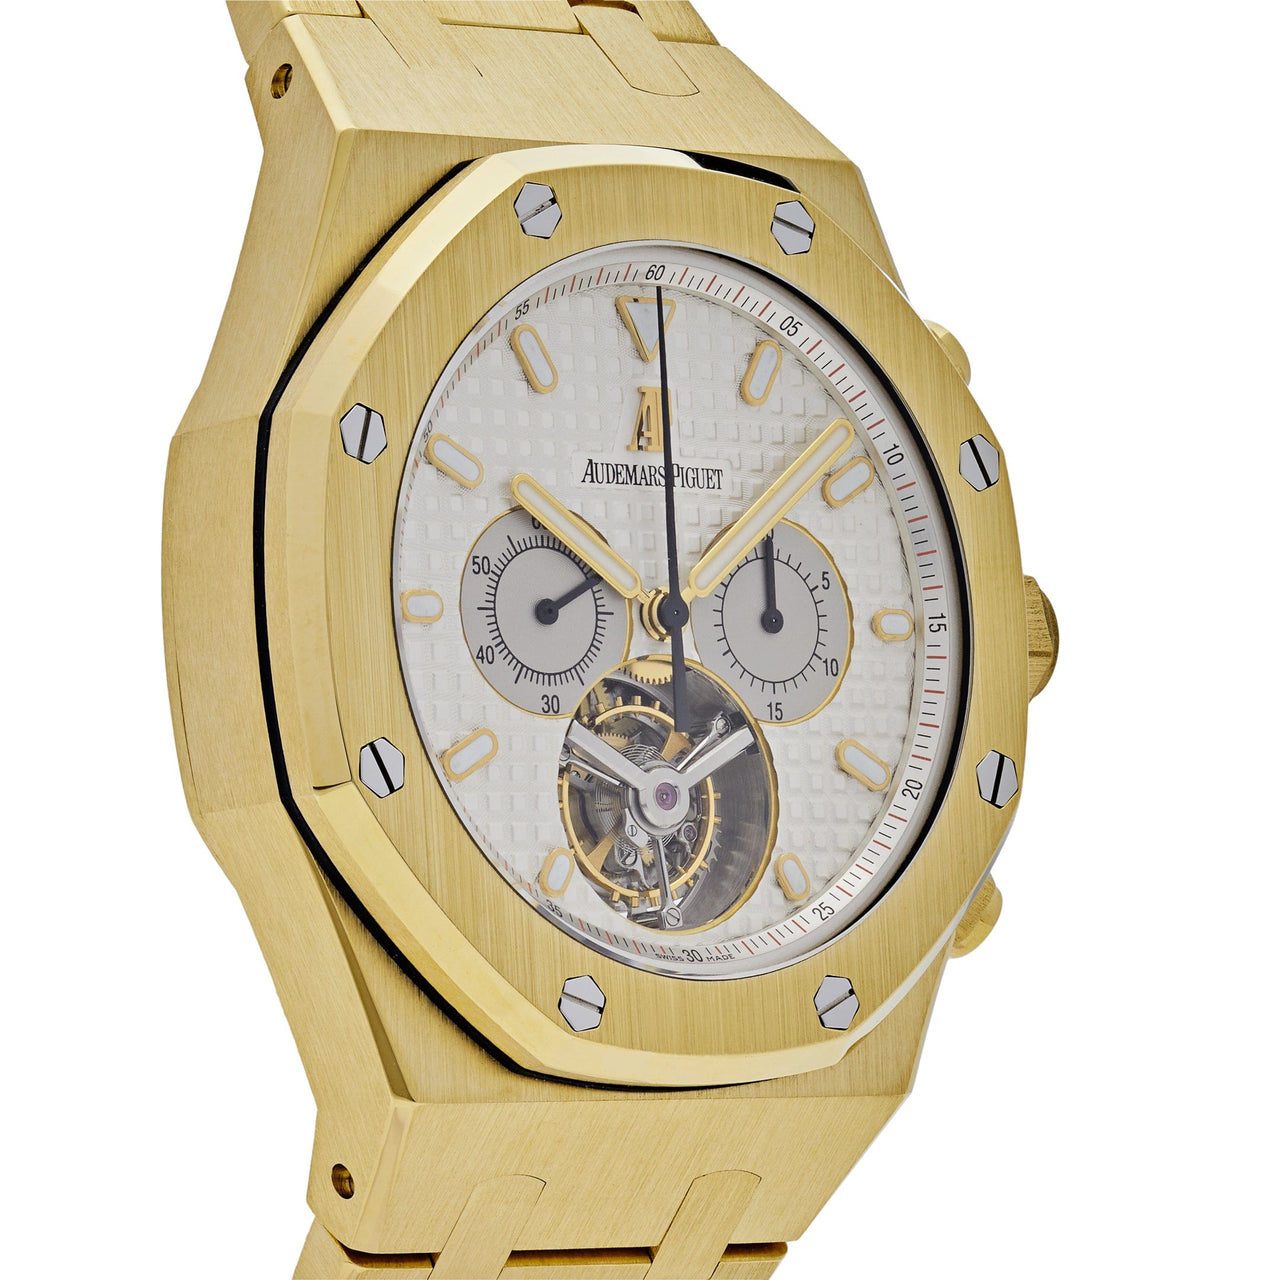 Audemars Piguet Royal Oak Chronograph Tourbillon Yellow Gold 25977BA.OO.1205BA.01 Wrist Aficionado